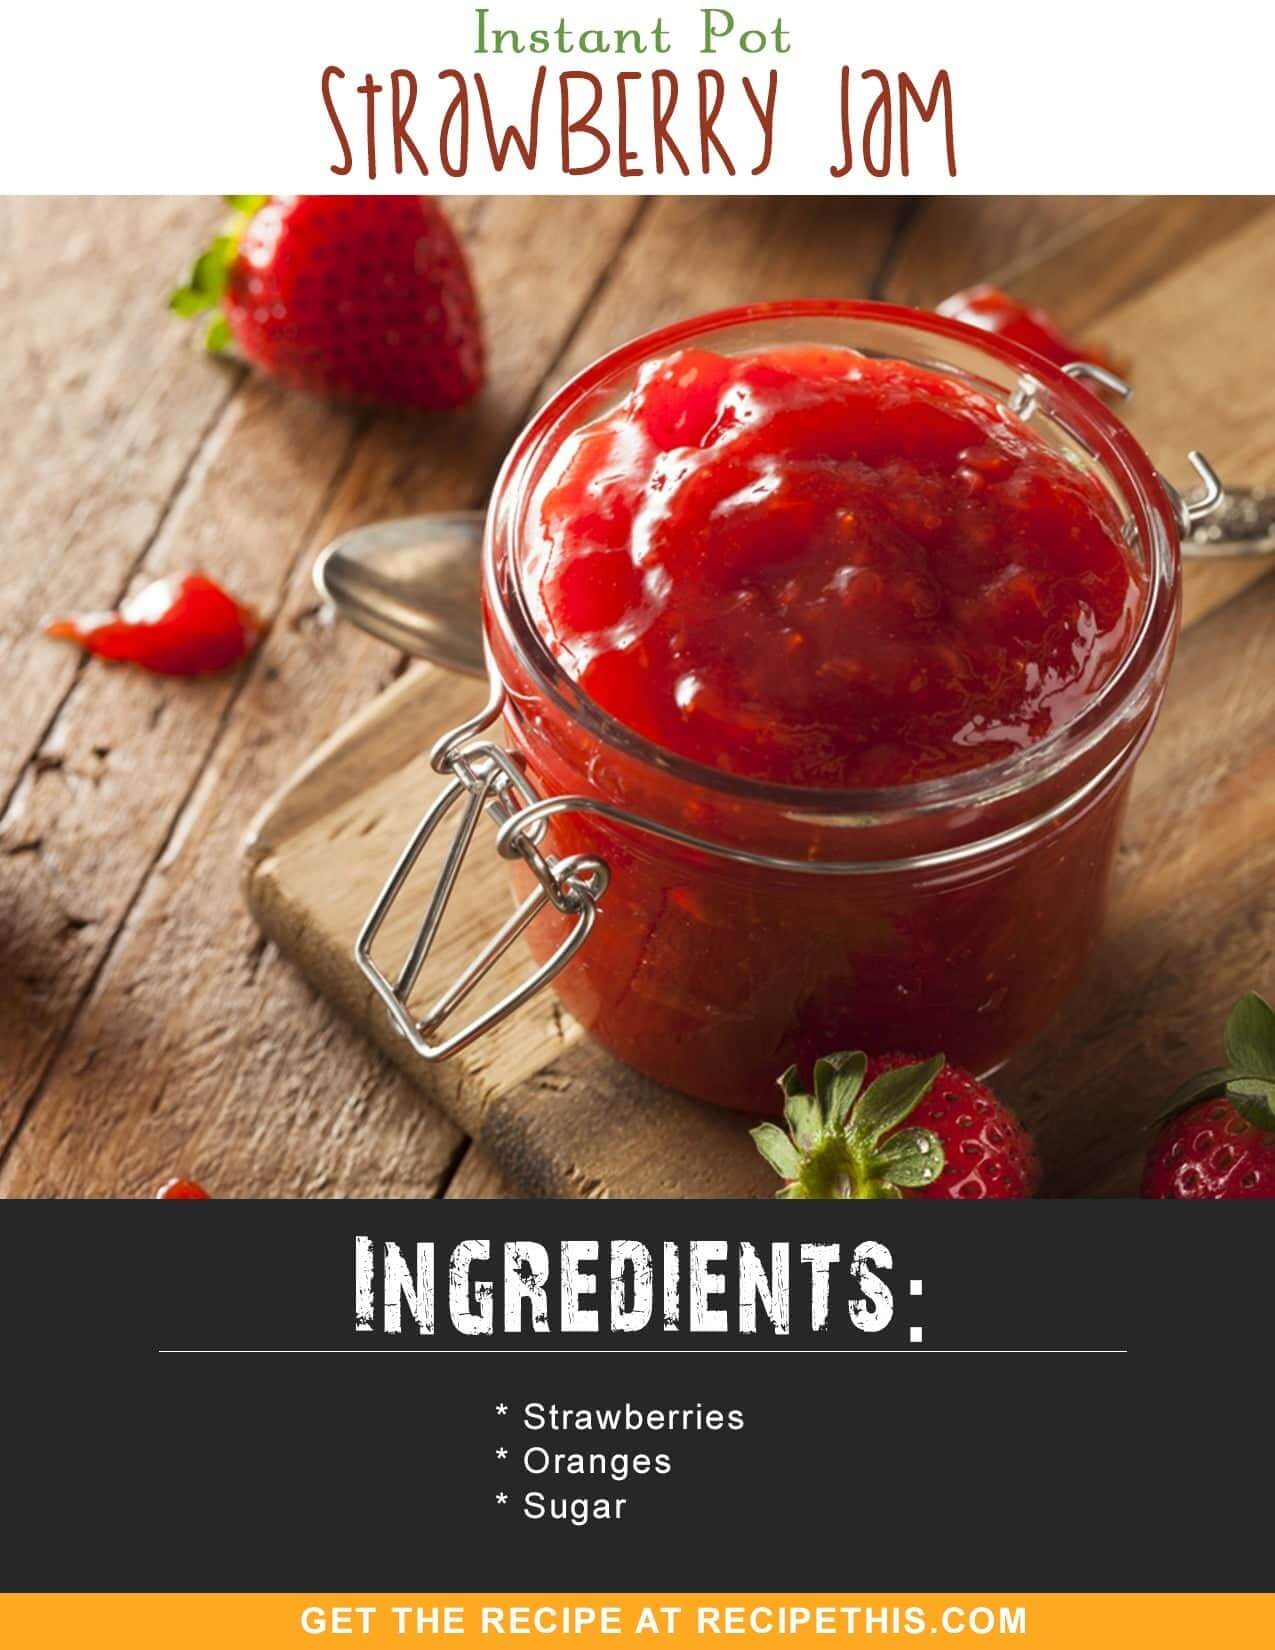 Instant Pot Recipes | Instant Pot Strawberry Jam Recipe from RecipeThis.com